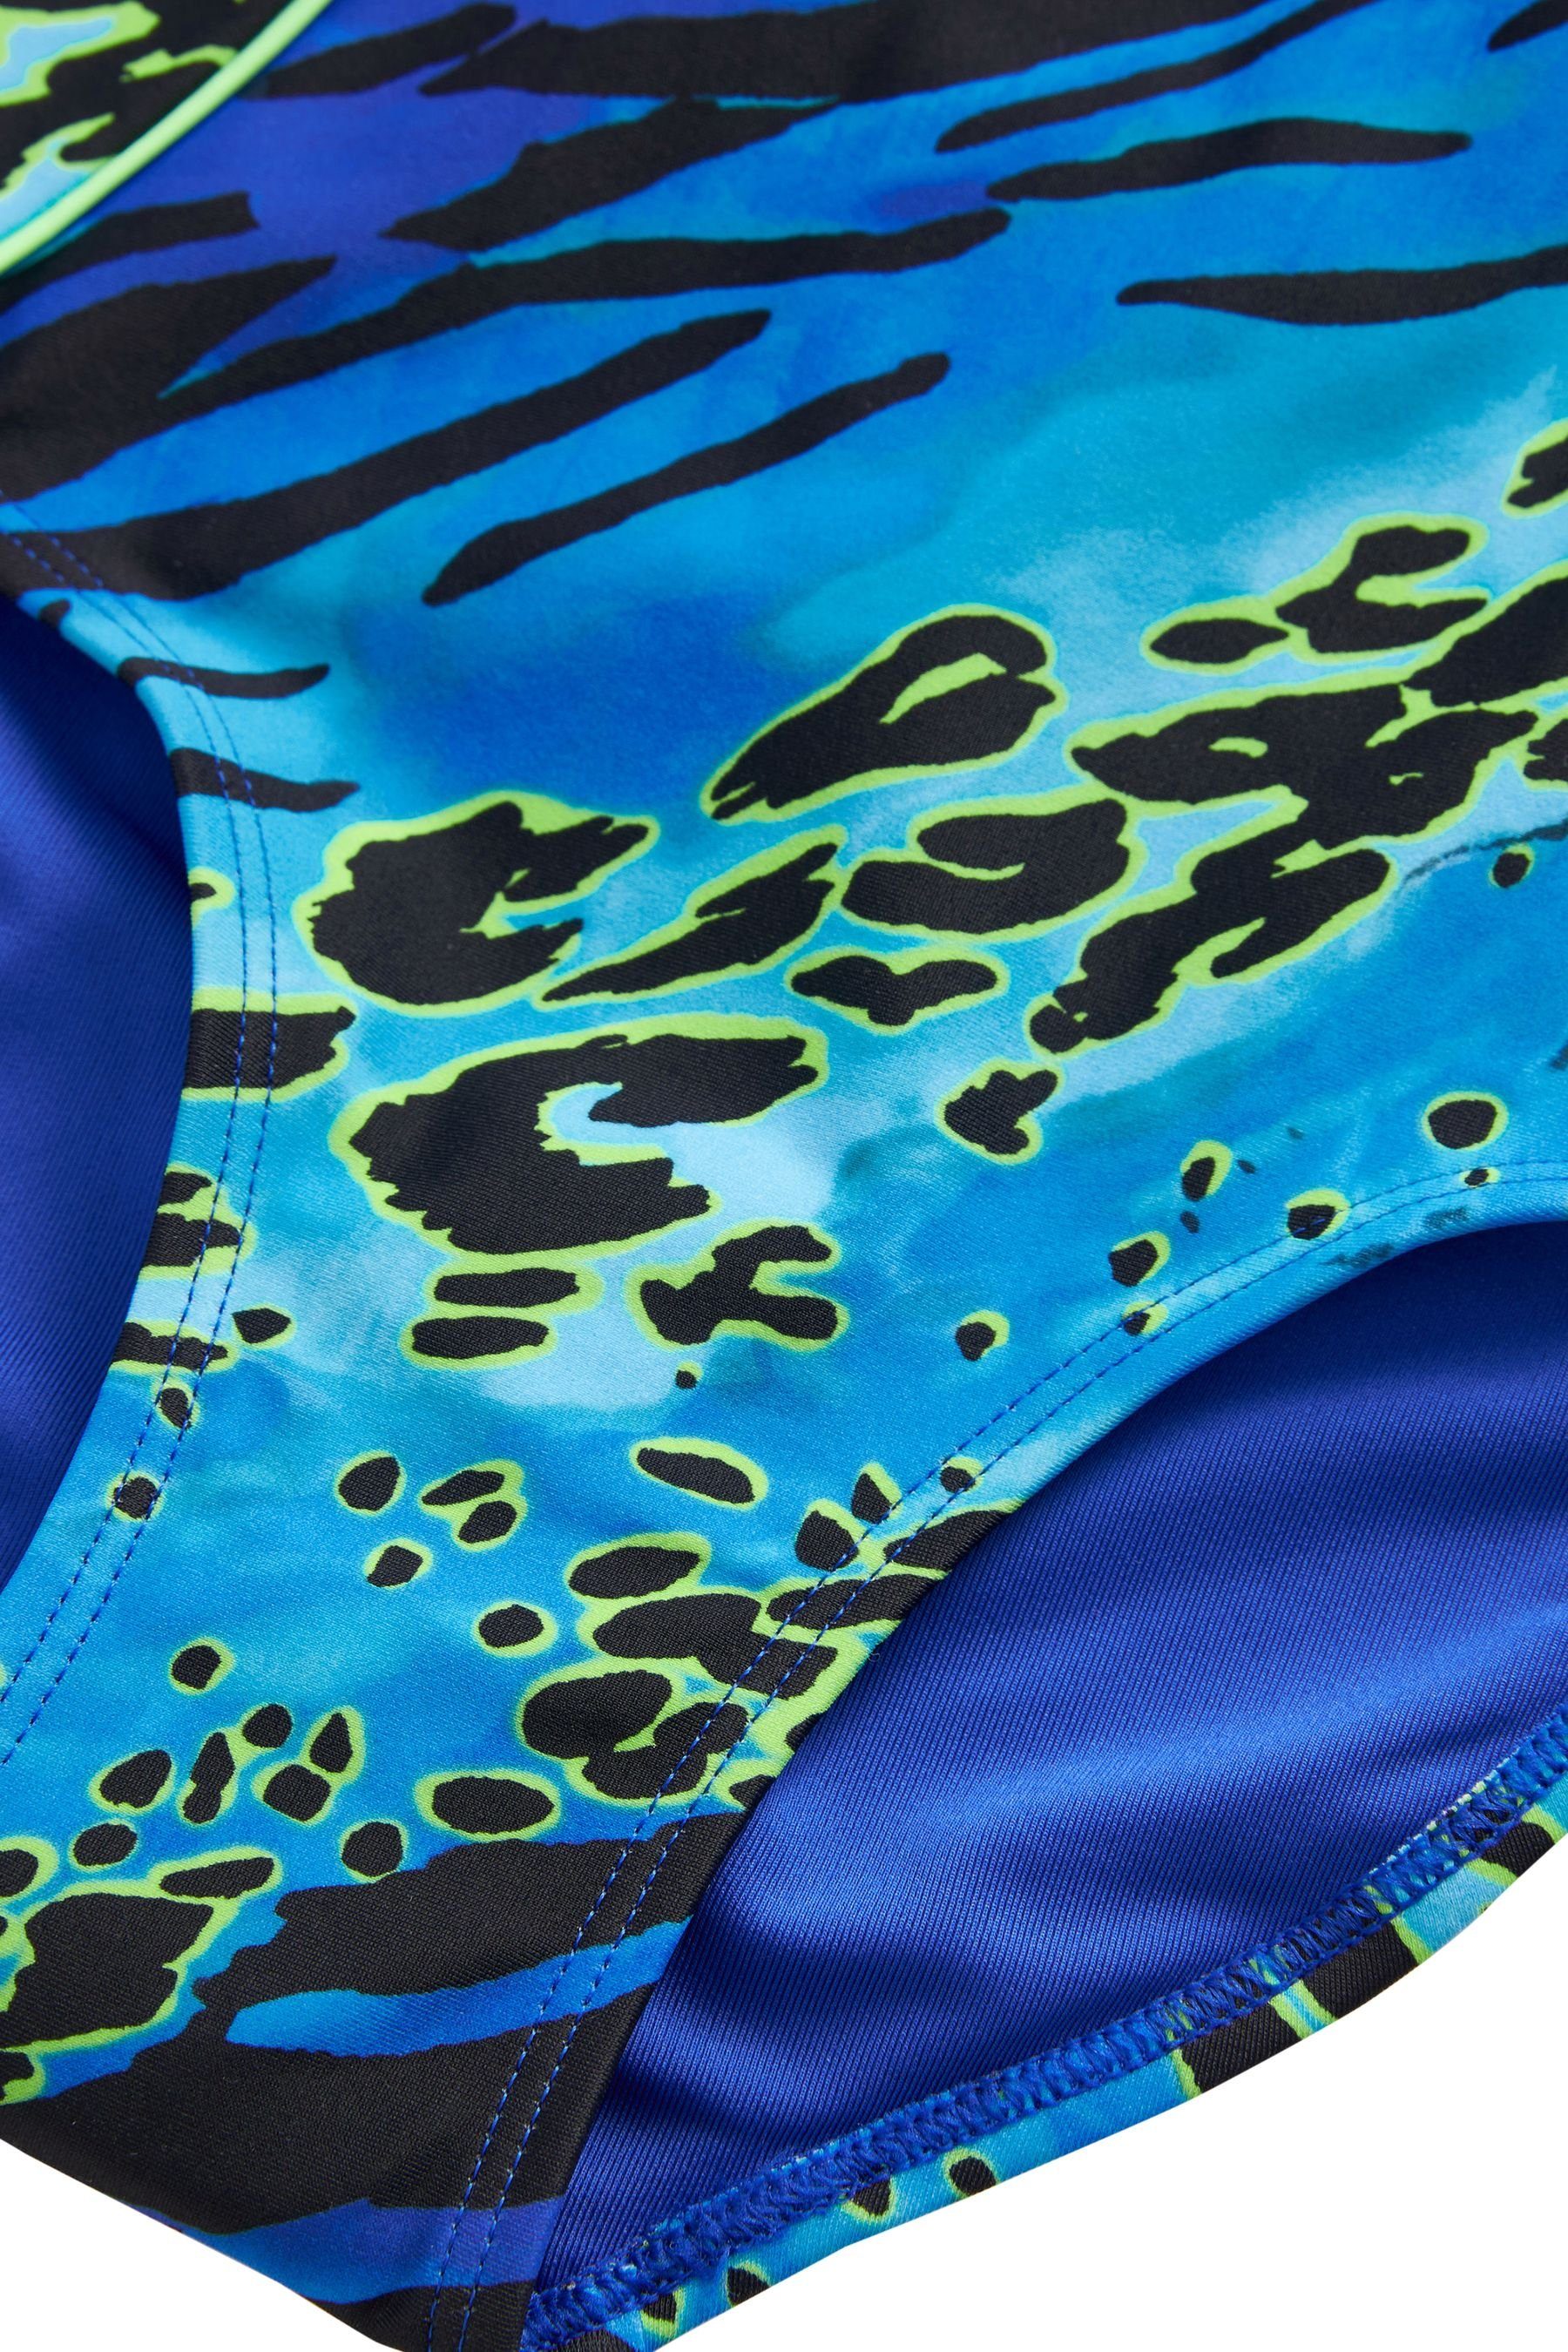 Next Badeanzug Sportbadeanzug Blue/Green gekreuzten Print Animal Rückenträgern (1-St) mit